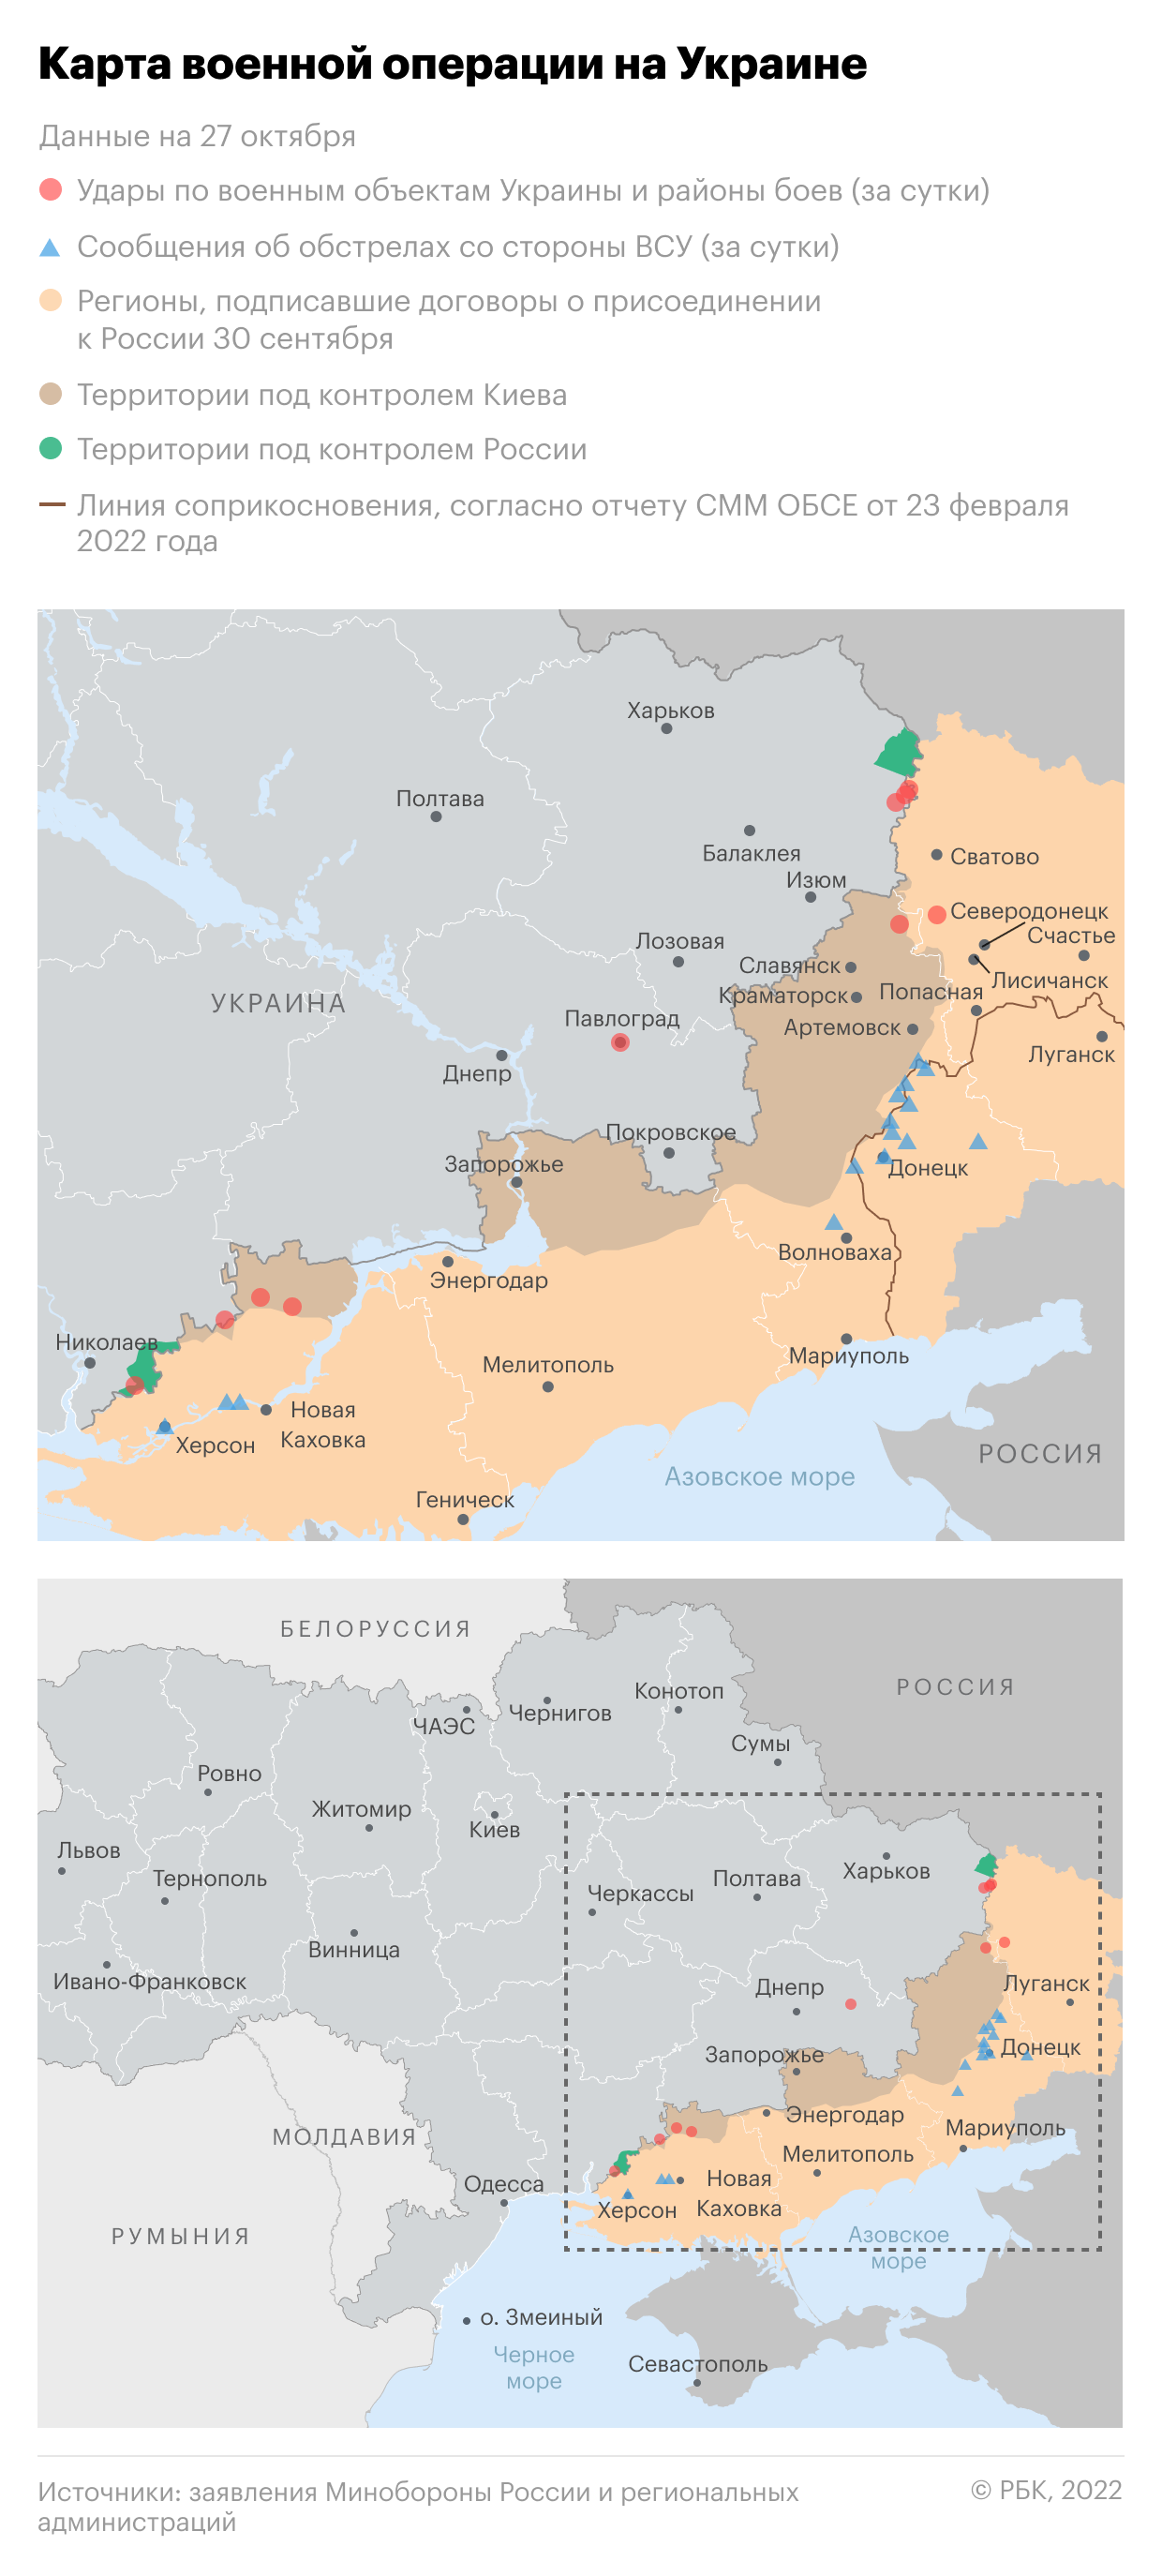 Военная операция на Украине. Карта"/>













